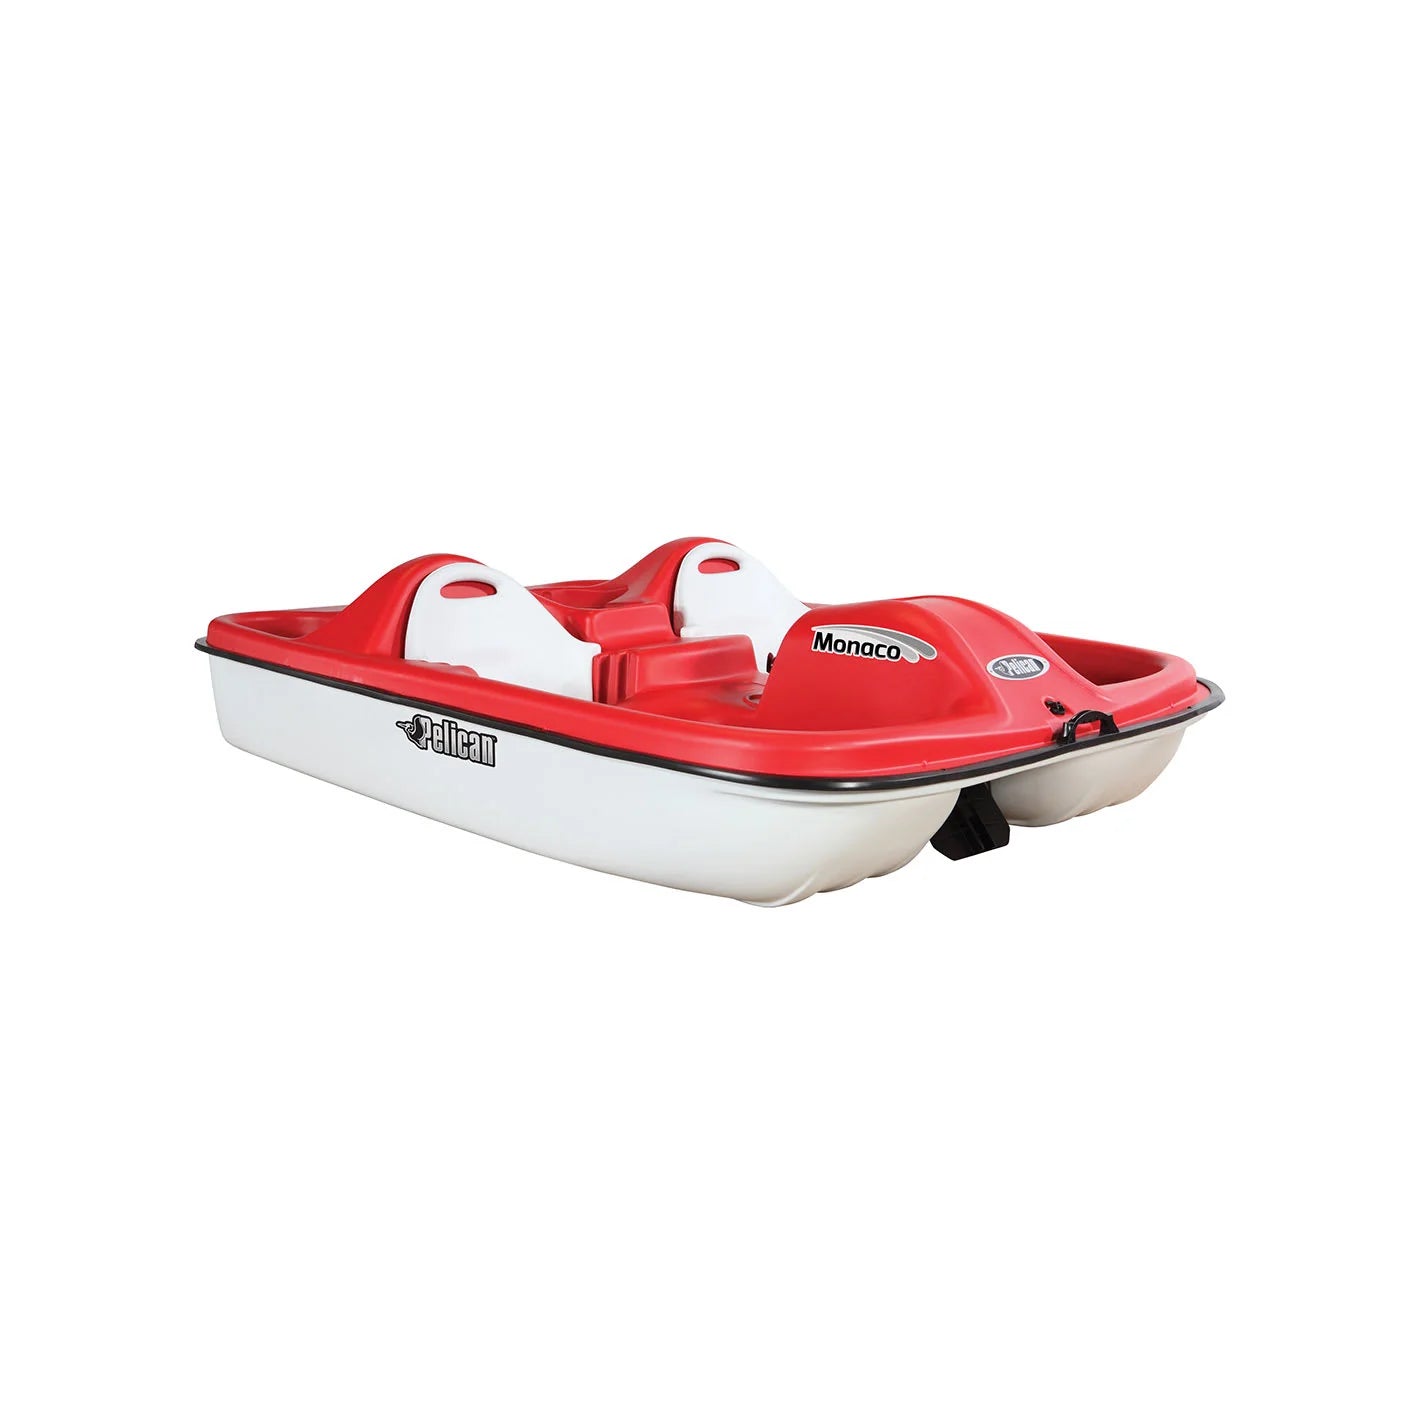 Pelican Pedal Boat - Monaco Red & White